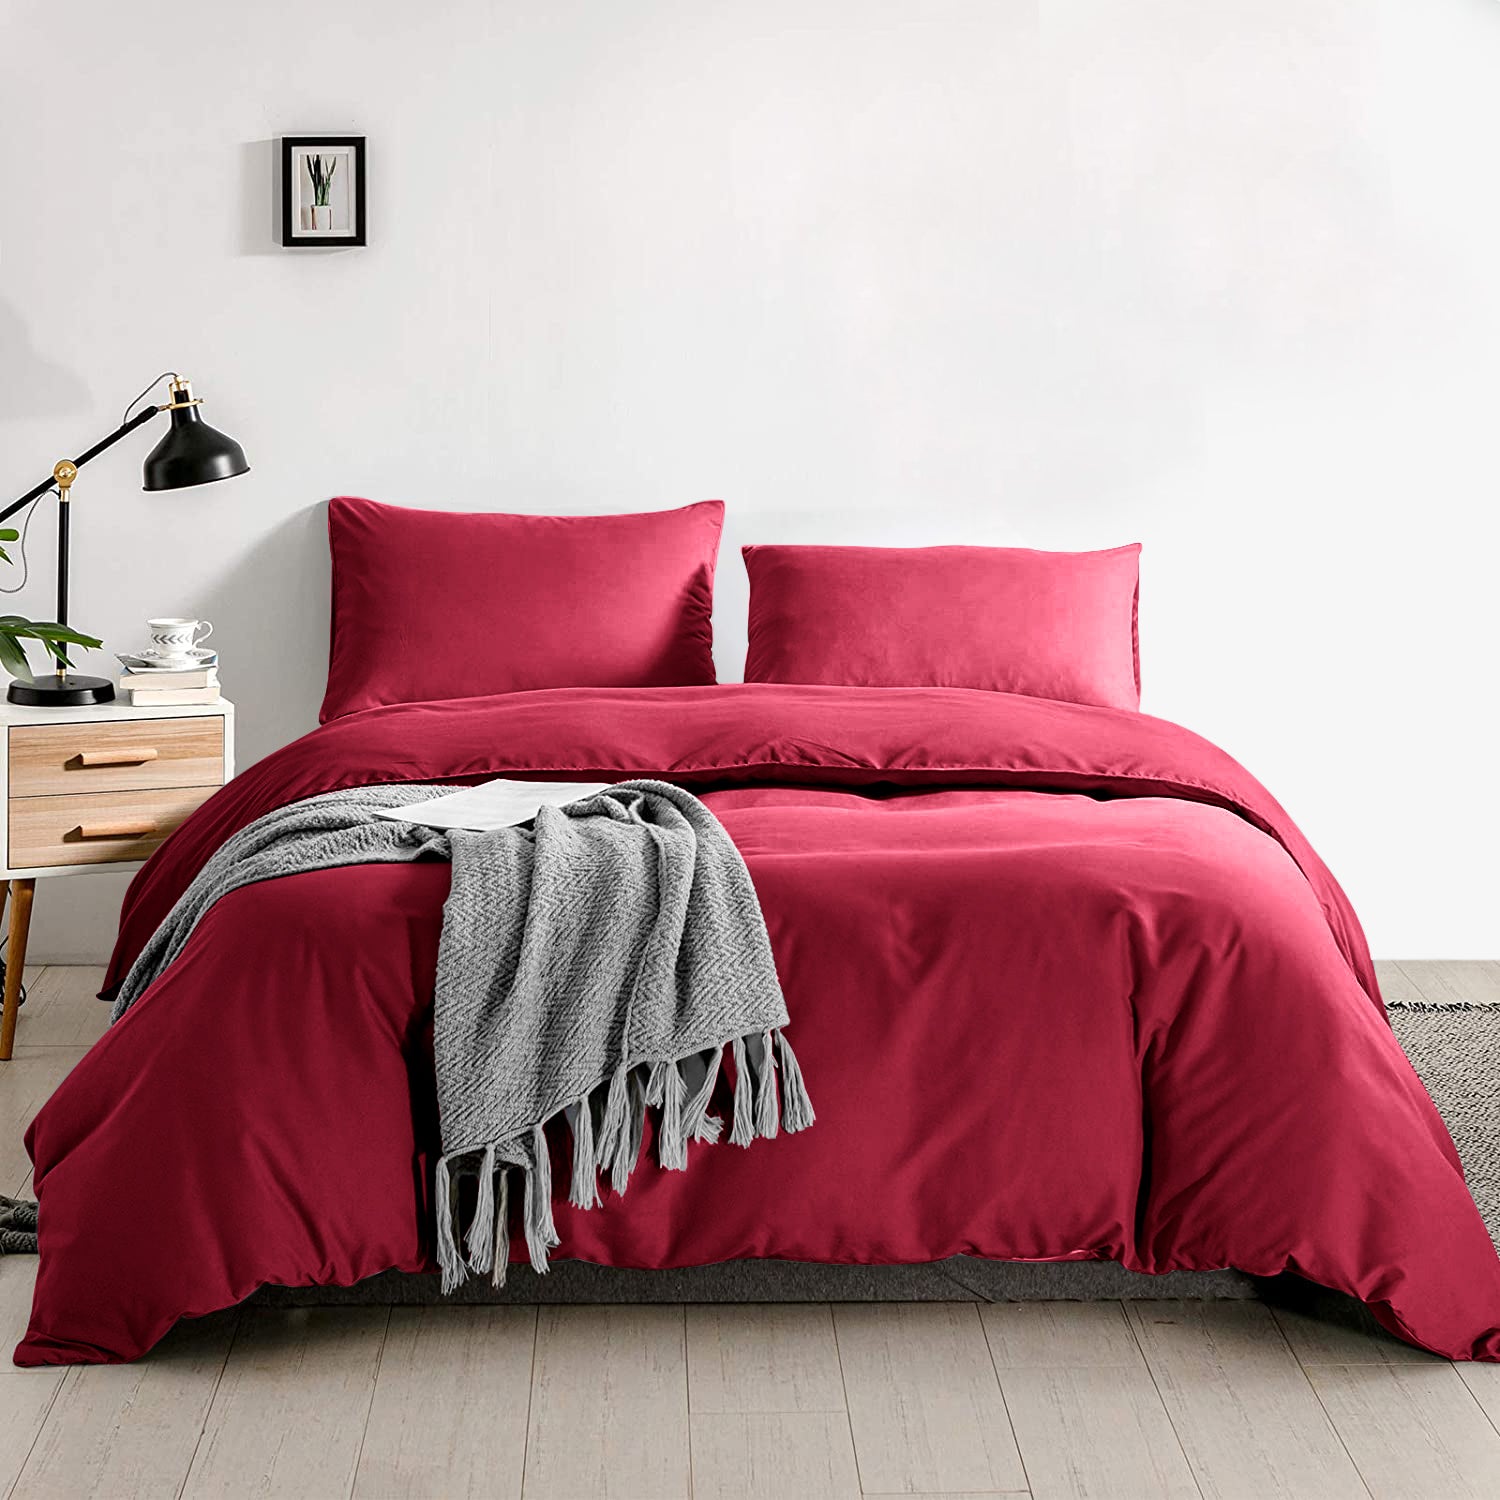 Red Duvet Cover Plain Bedding Set